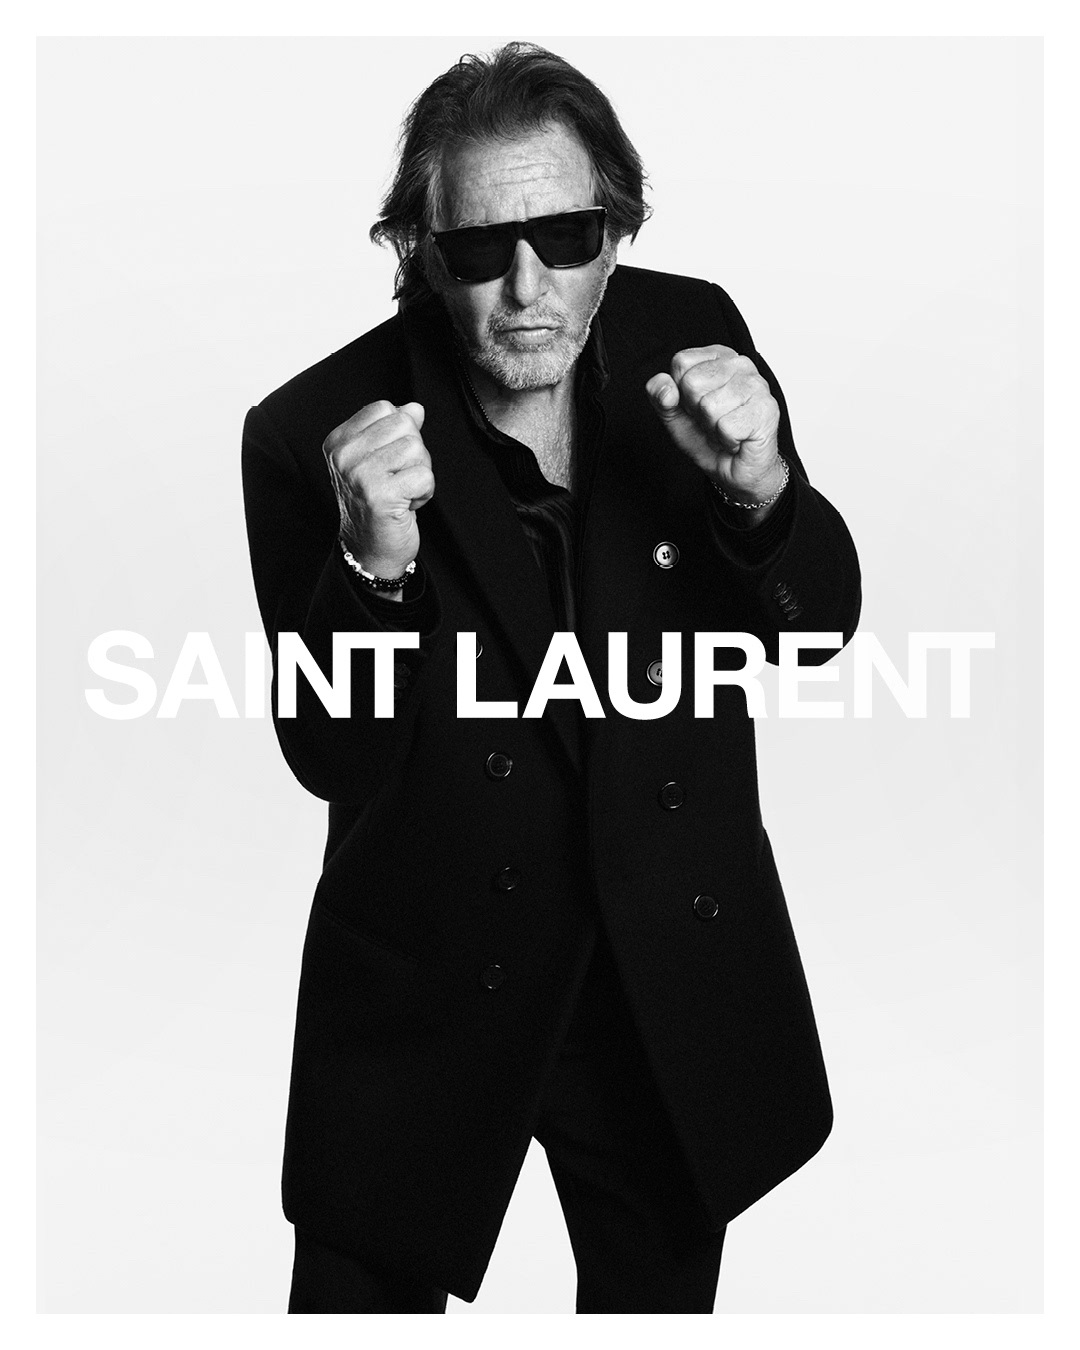 Saint Laurent Al Pacino 2